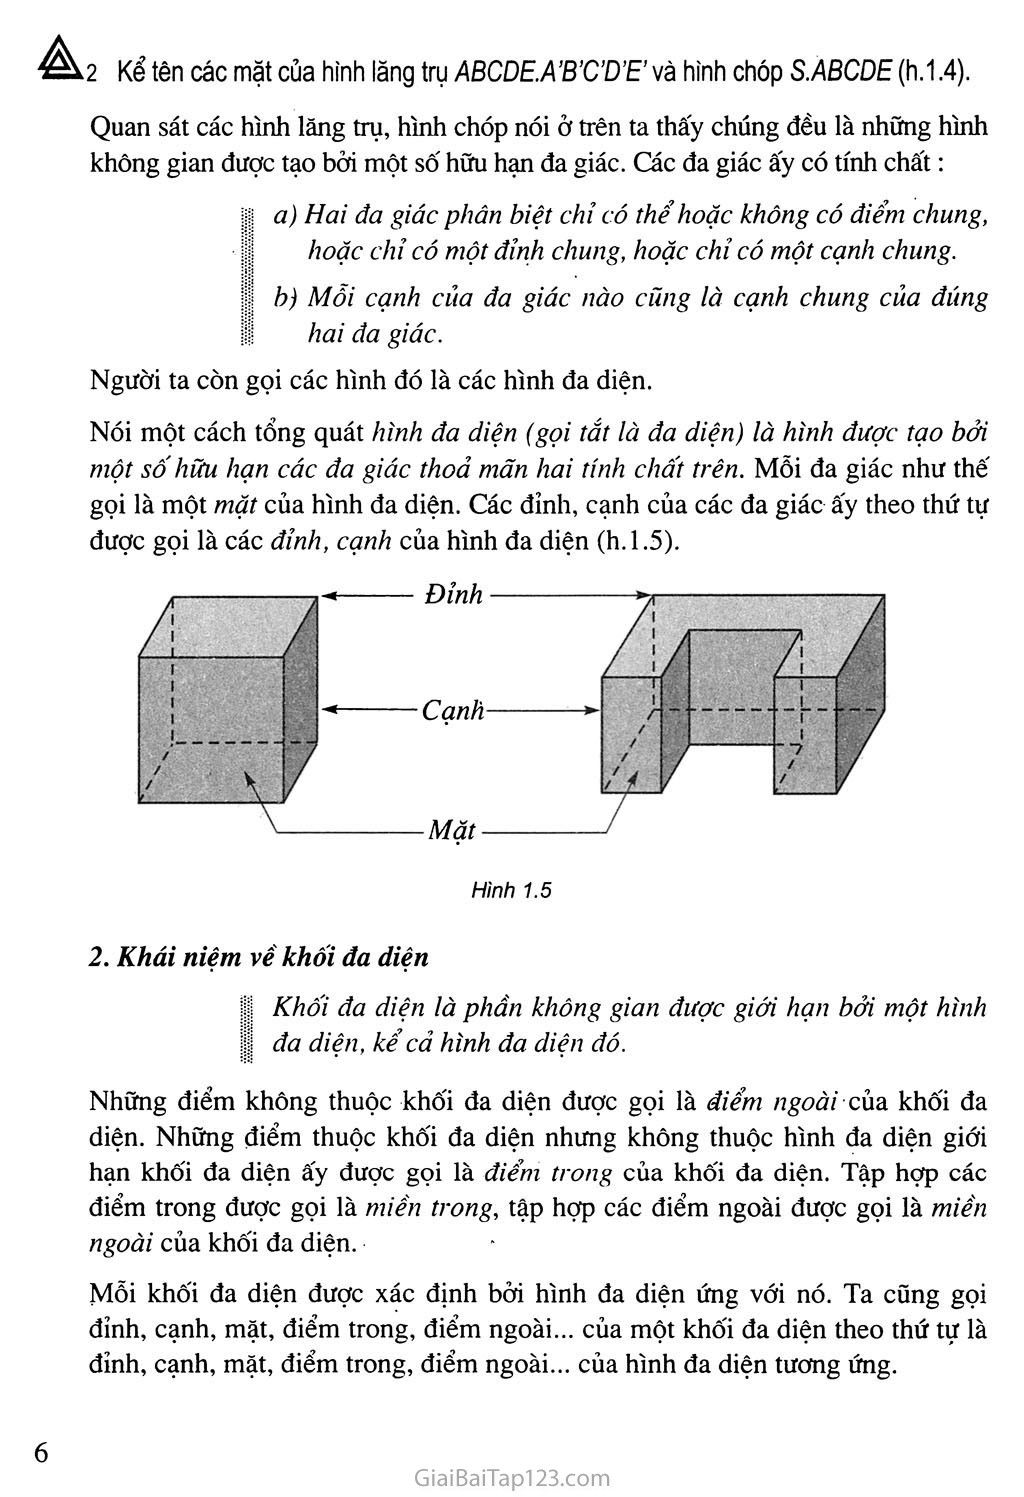 Bài 1. Khái niệm về khối đa diện trang 4